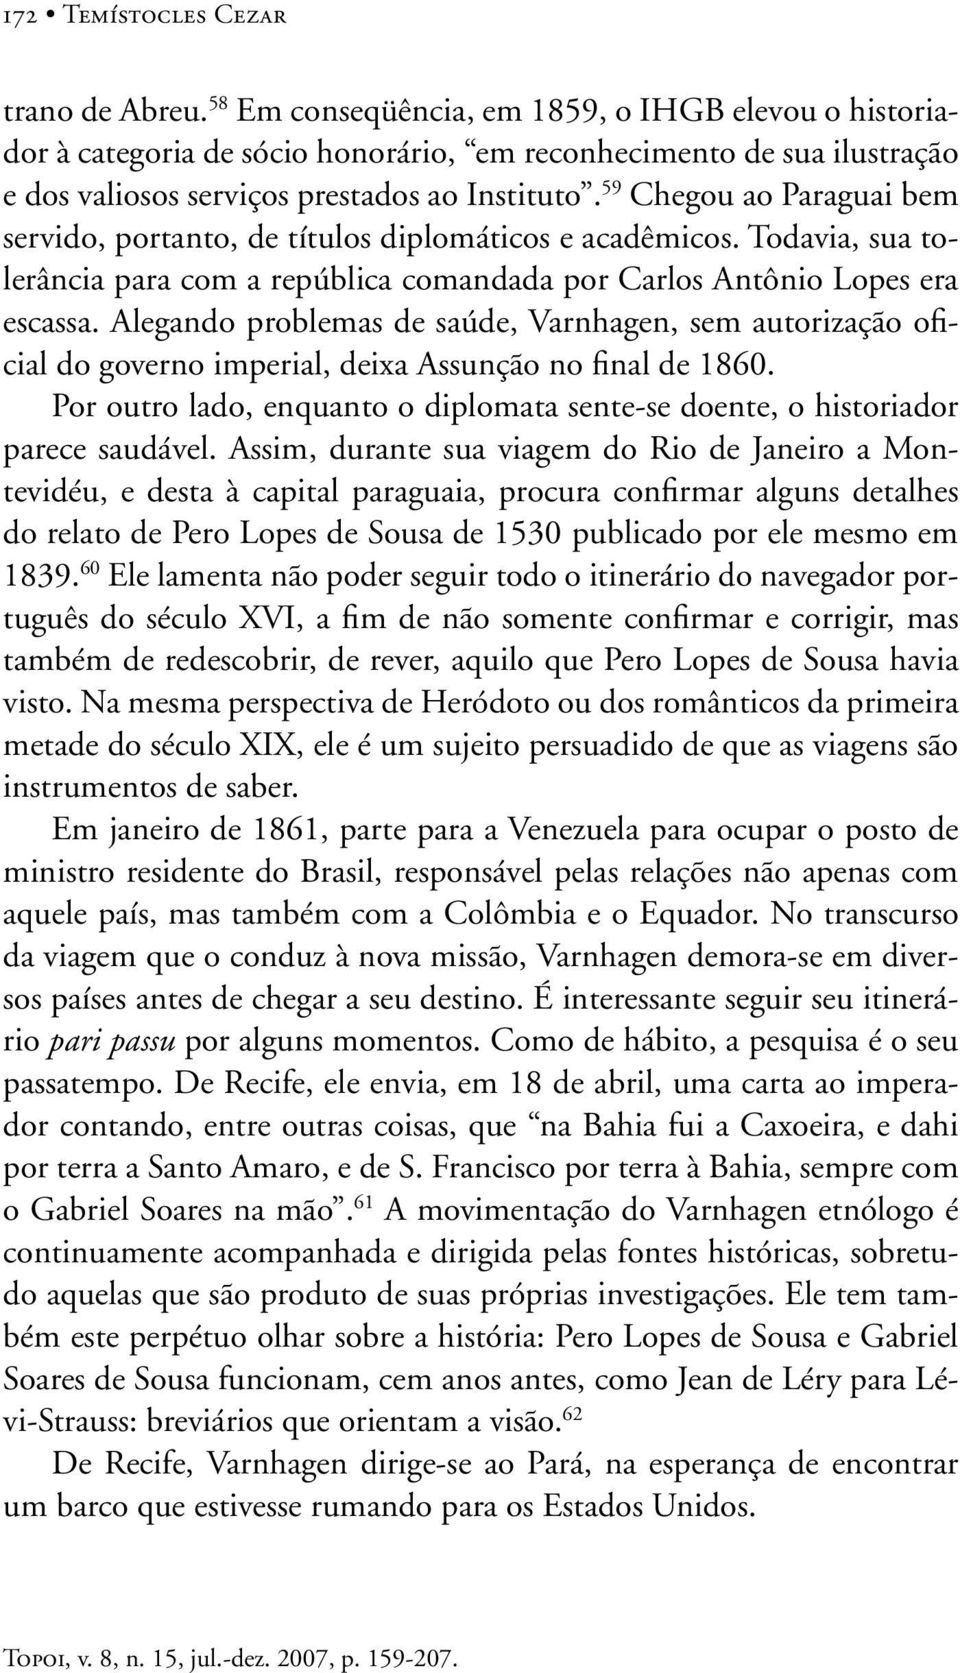 59 Chegou ao Paraguai bem servido, portanto, de títulos diplomáticos e acadêmicos. Todavia, sua tolerância para com a república comandada por Carlos Antônio Lopes era escassa.